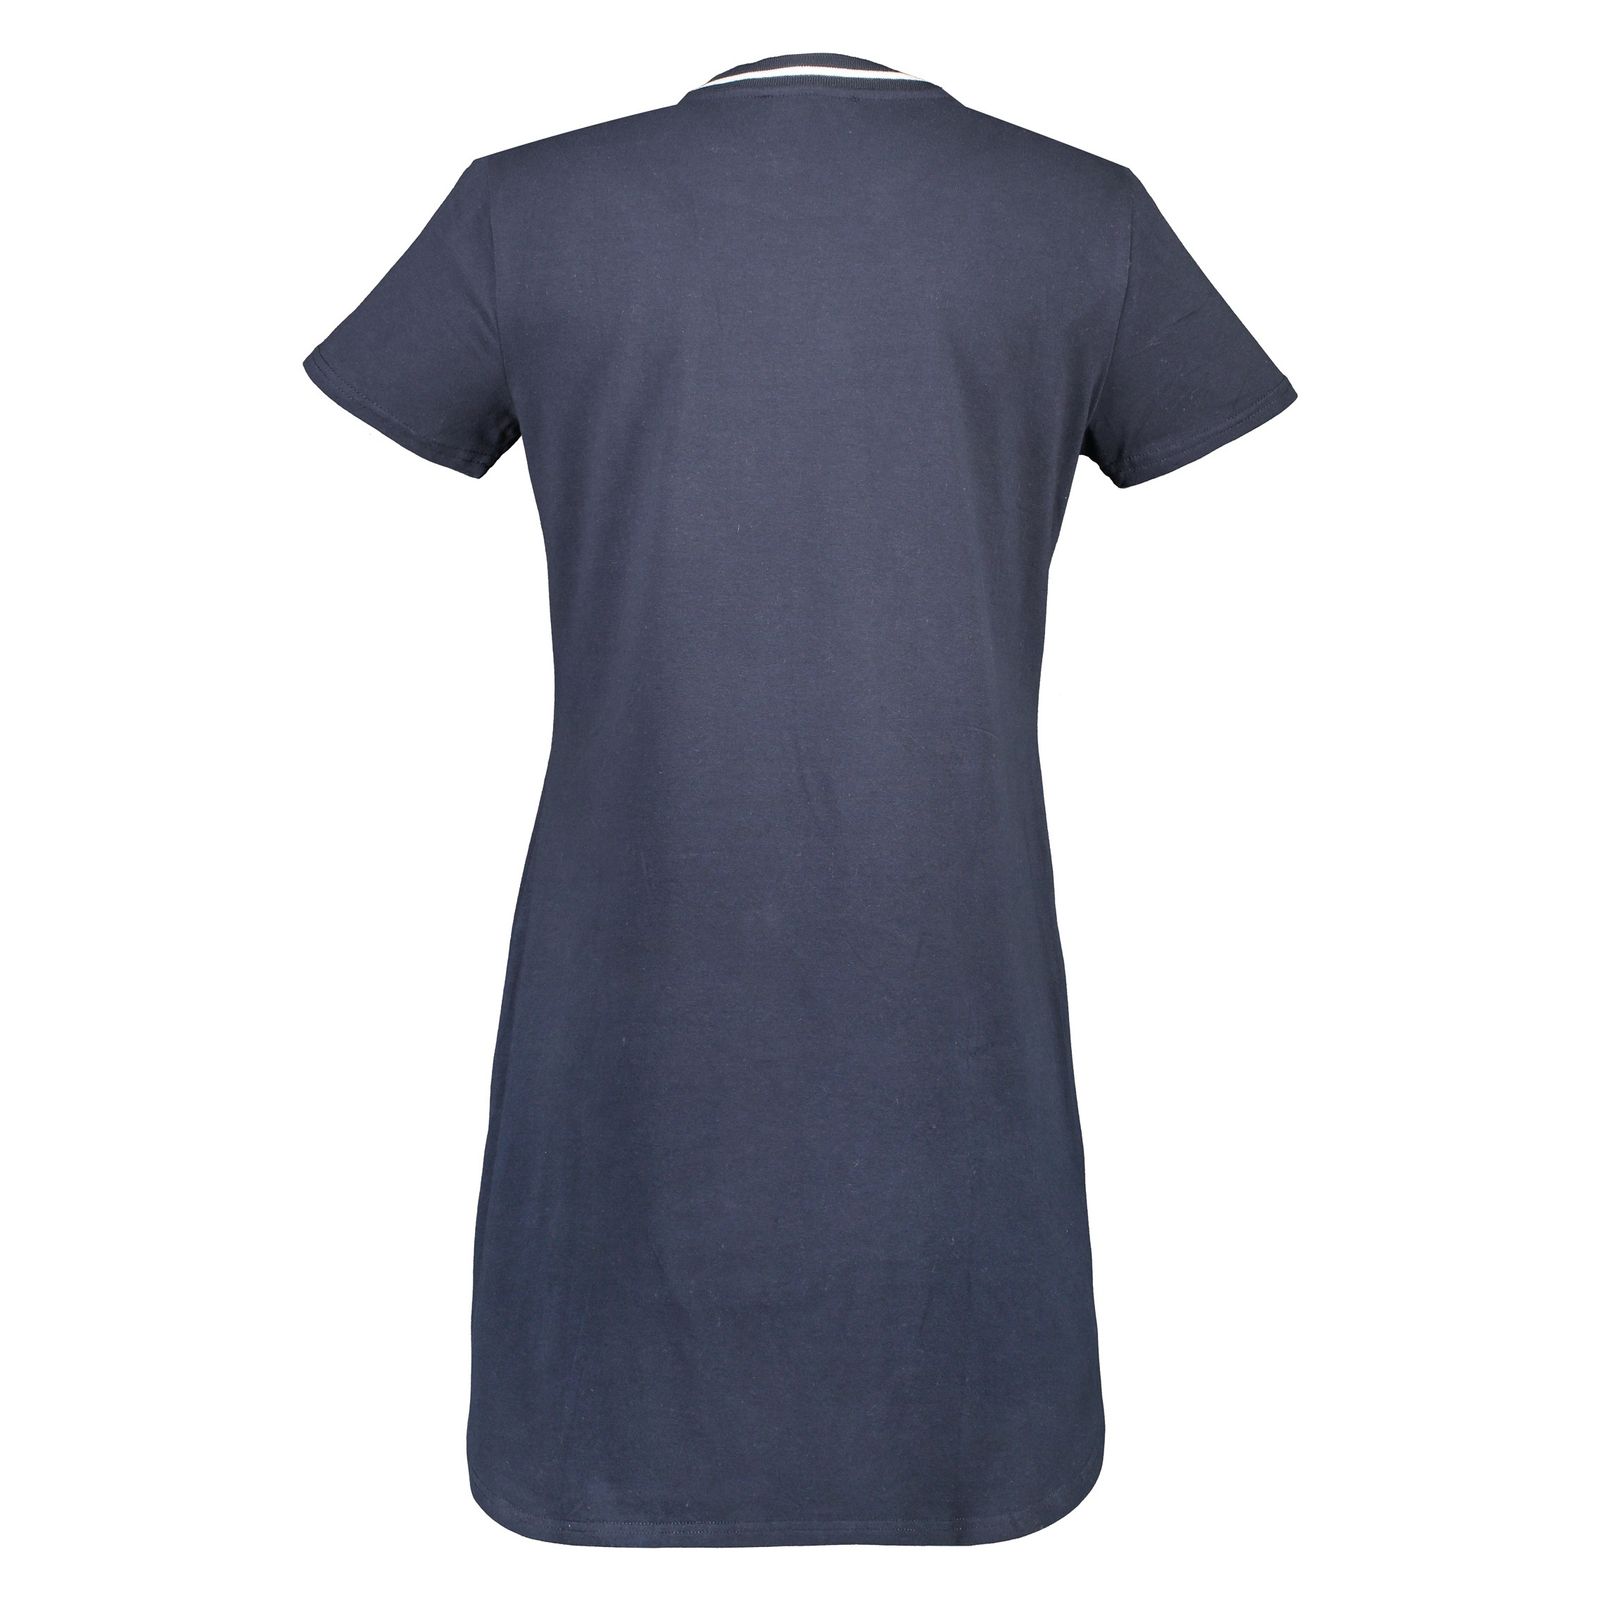 پیراهن زنانه کالینز مدل CL1032802-NAVY - سرمه ای - 4